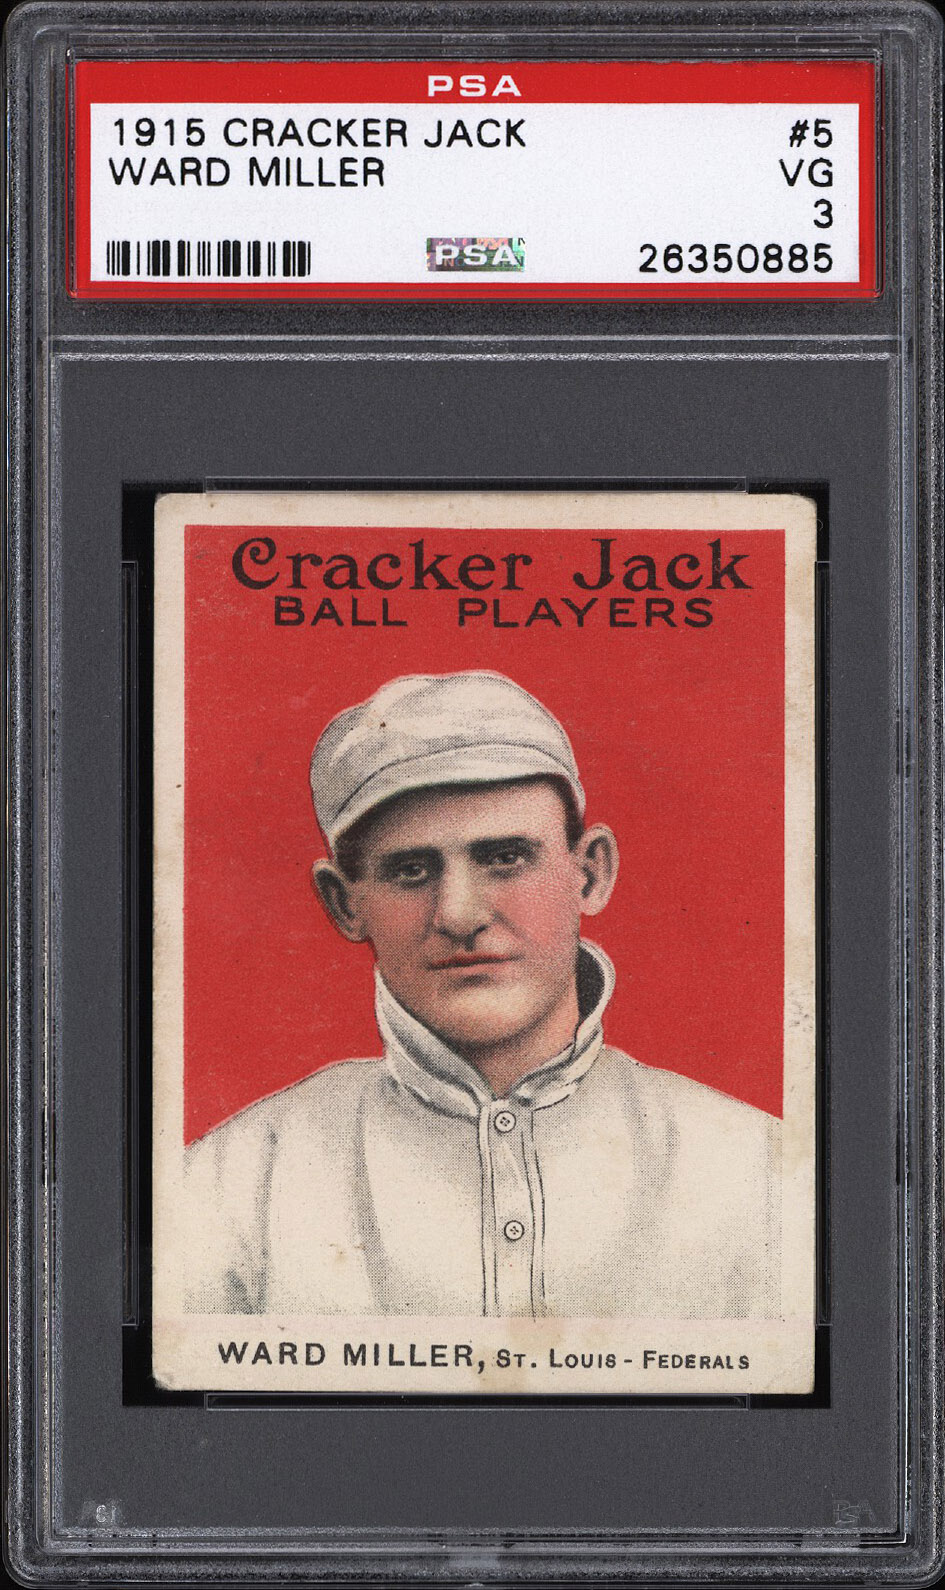  1915 Cracker Jack #5 Ward Miller - PSA VG 3